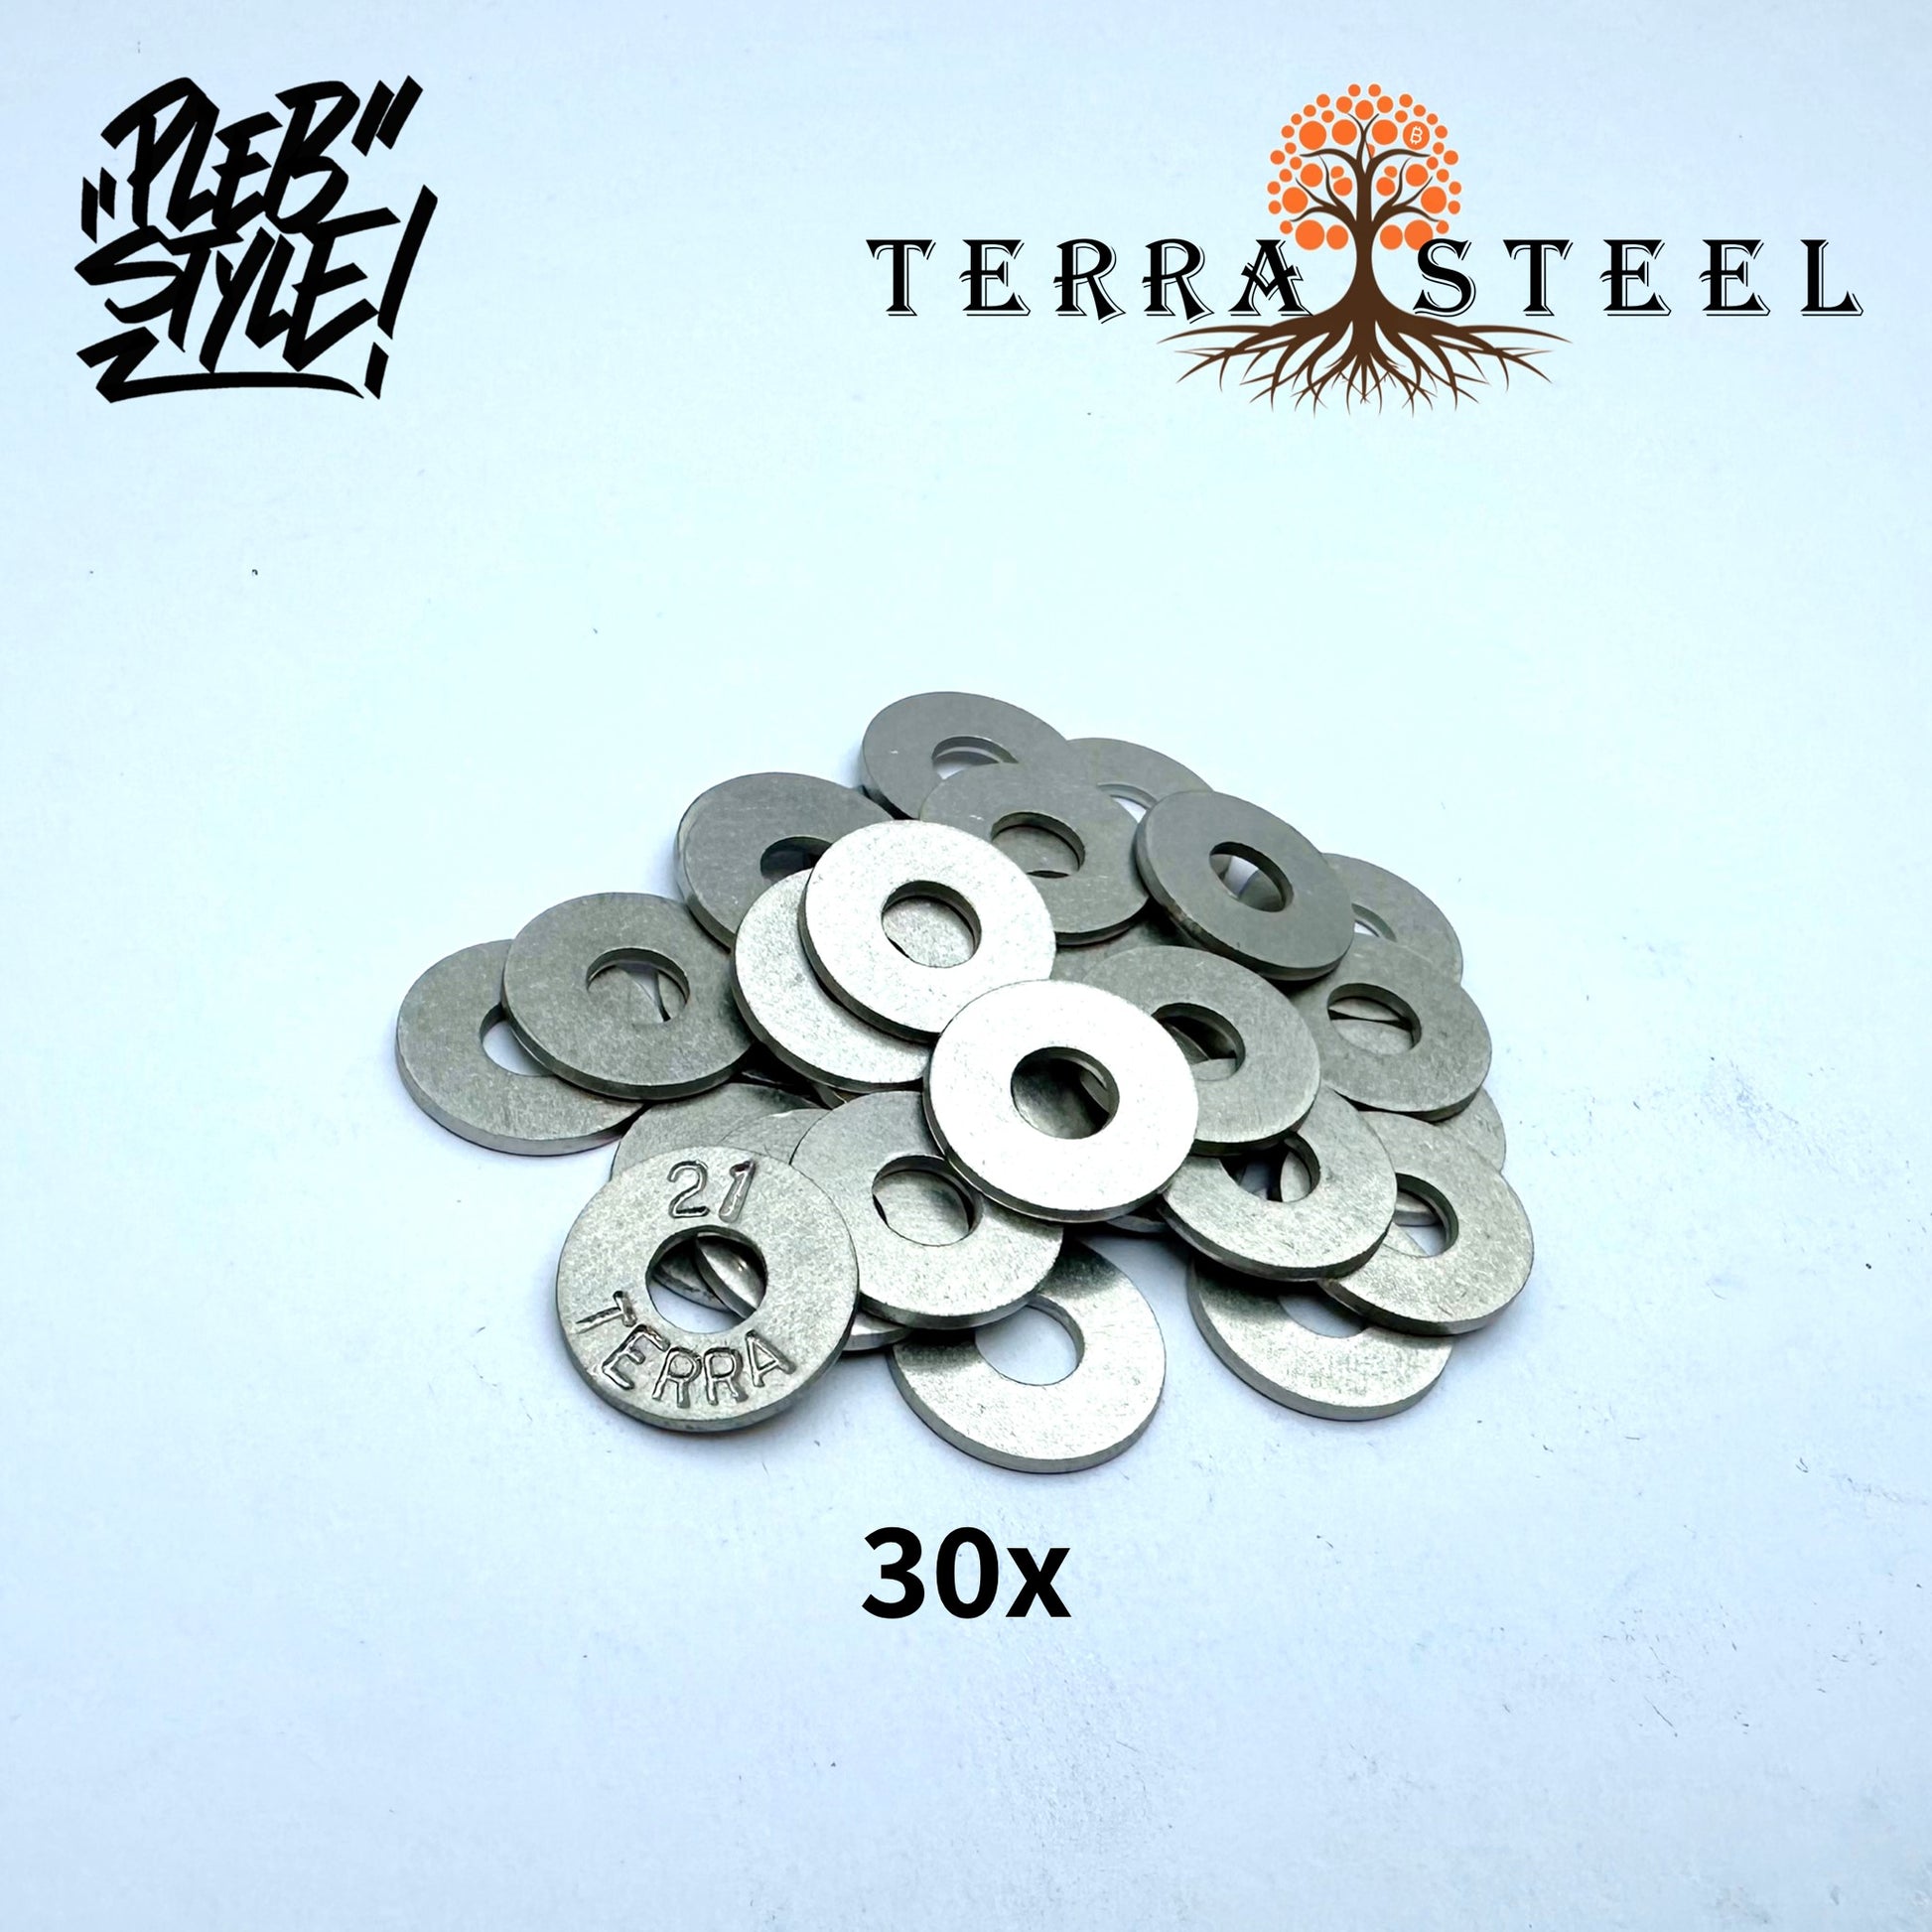 300x Seed Discs for TerraSteel Wallet by Plebstyle